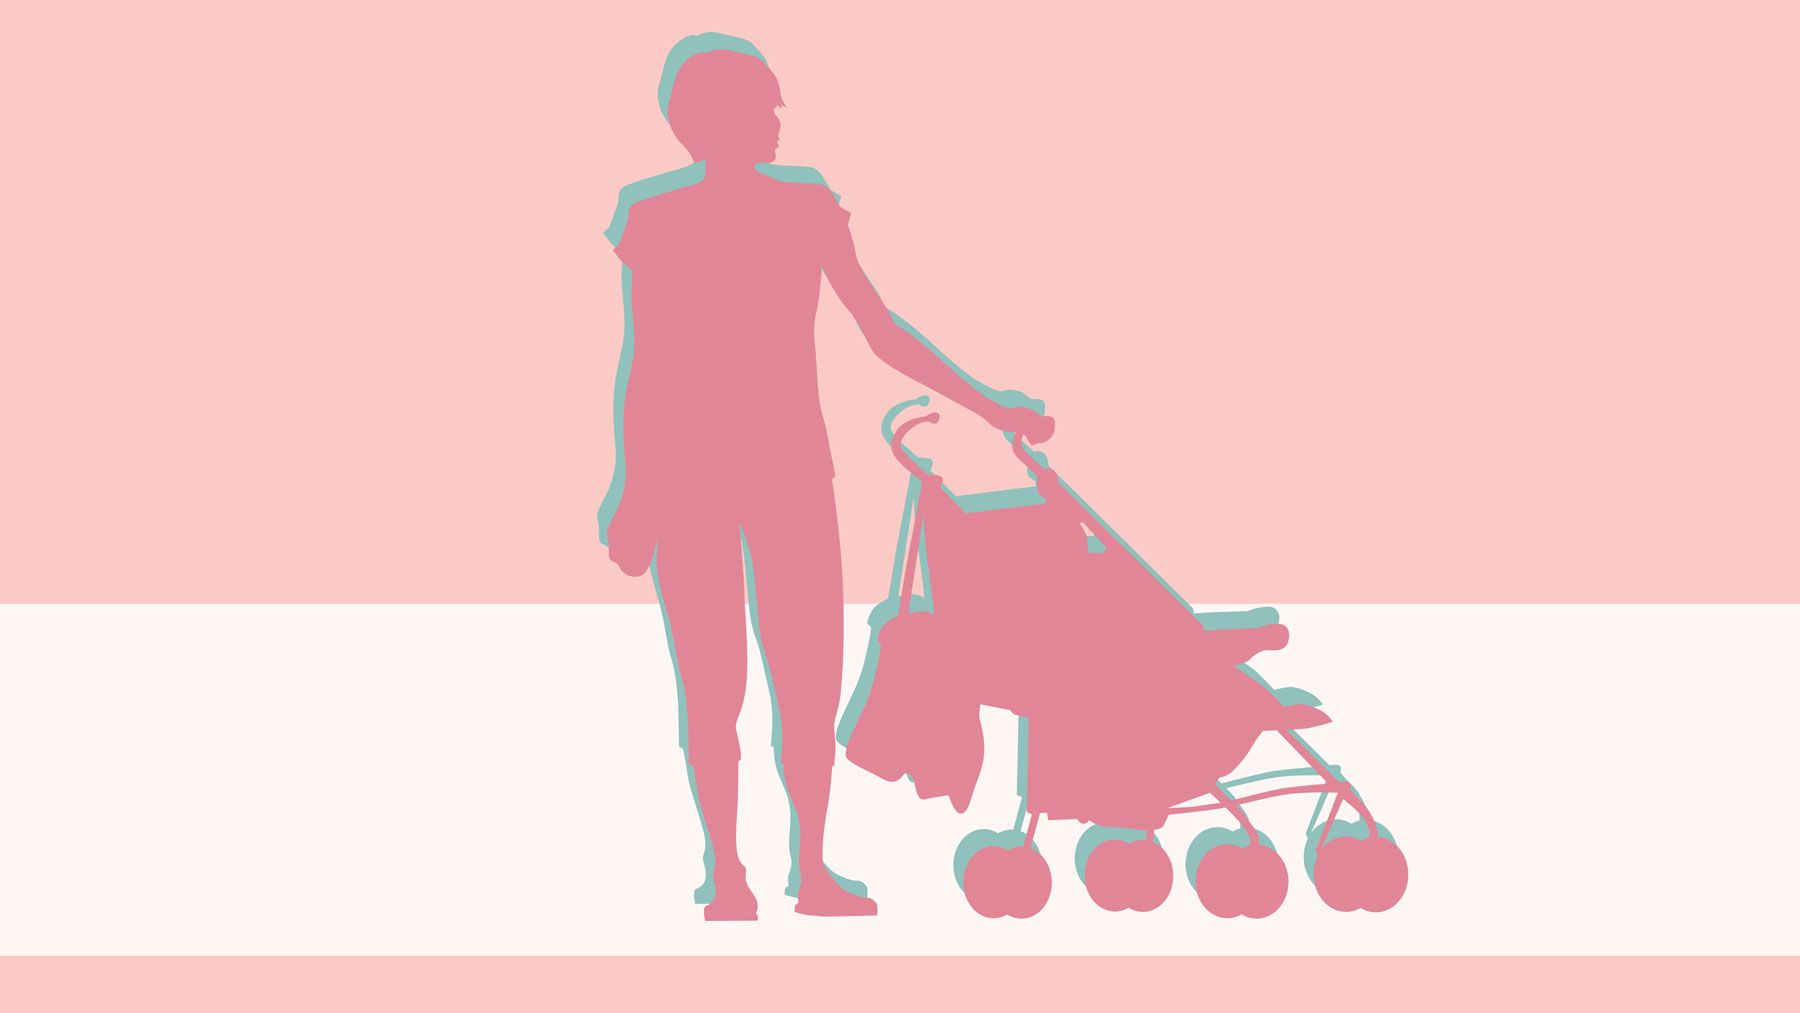 აღზრდის 7 რჩევა ათასწლეულის დედების მიერ, რომლებსაც აცხადებენ ახალი კვლევის თანახმად